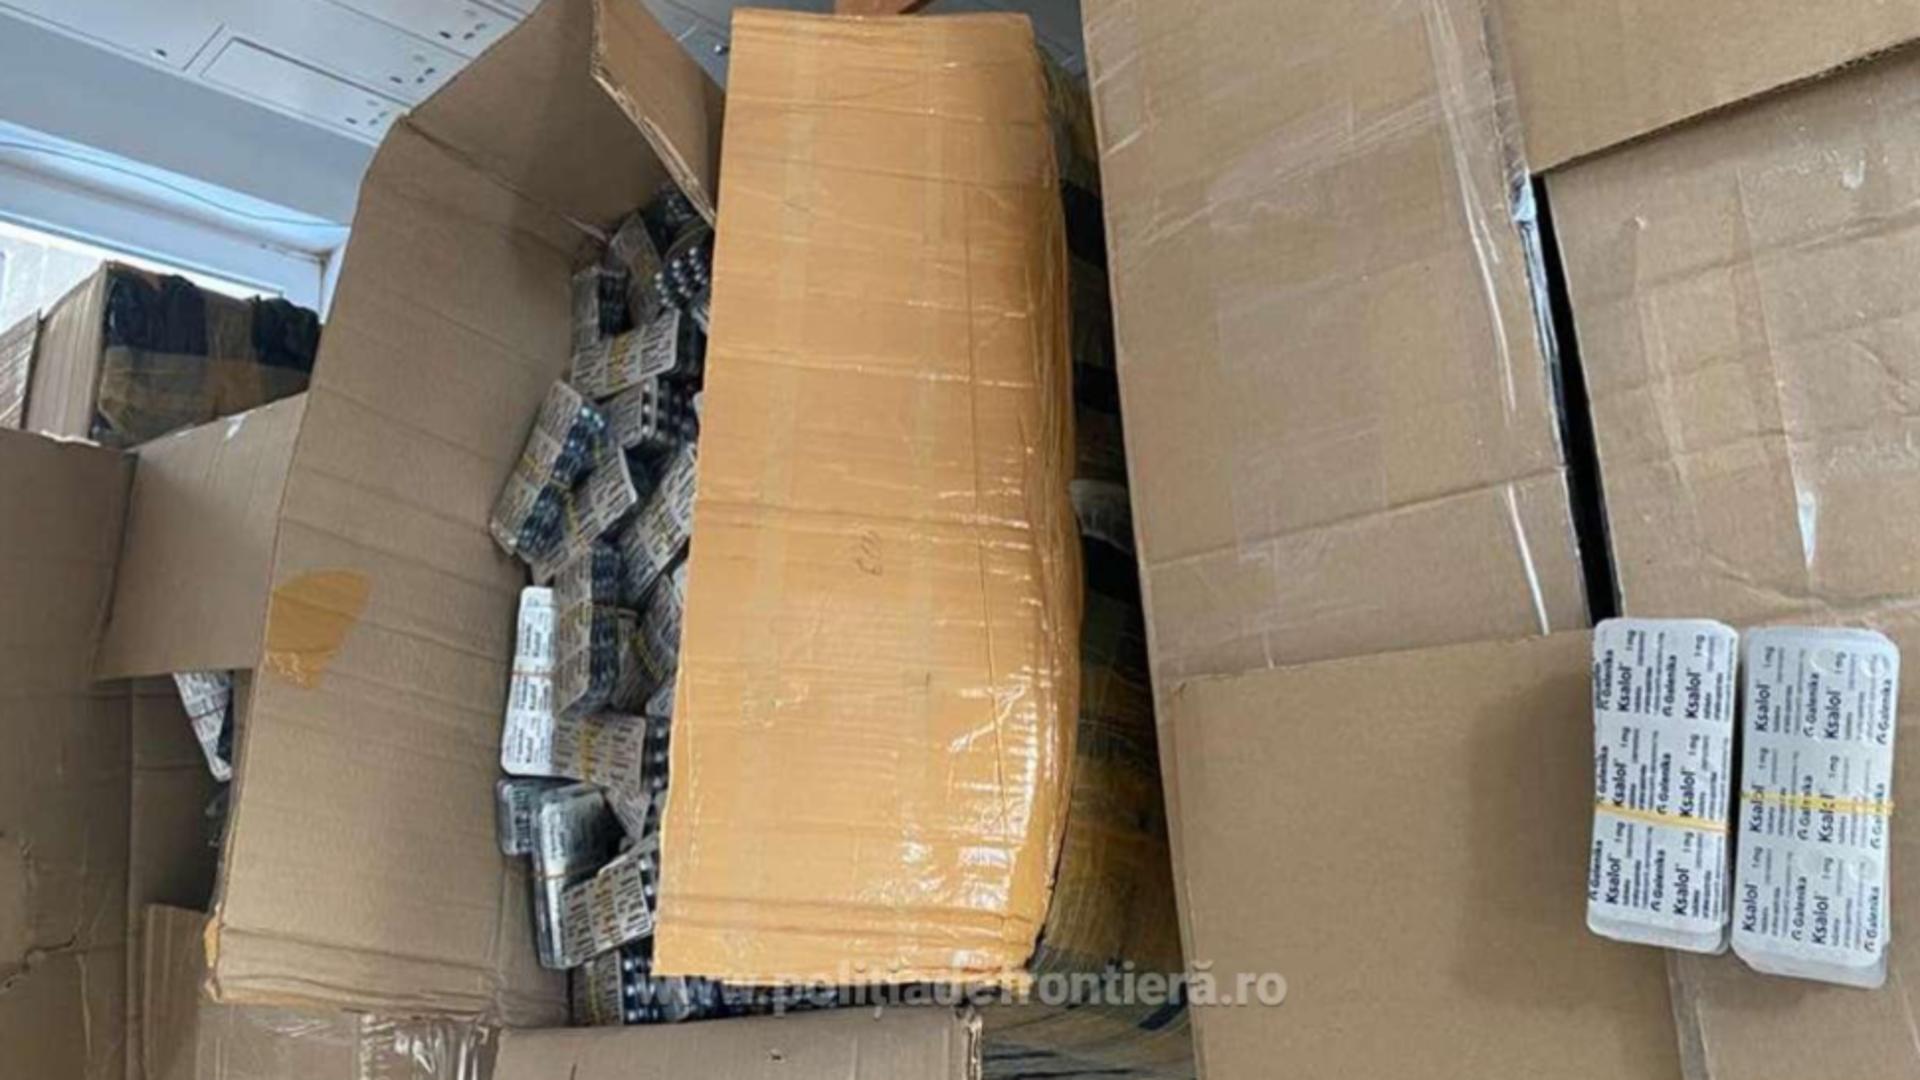 Captură record de droguri, la Vama Bechet: Comprimate de peste 3 milioane de euro, ascunse într-un camion cu seminţe de floarea-soarelui